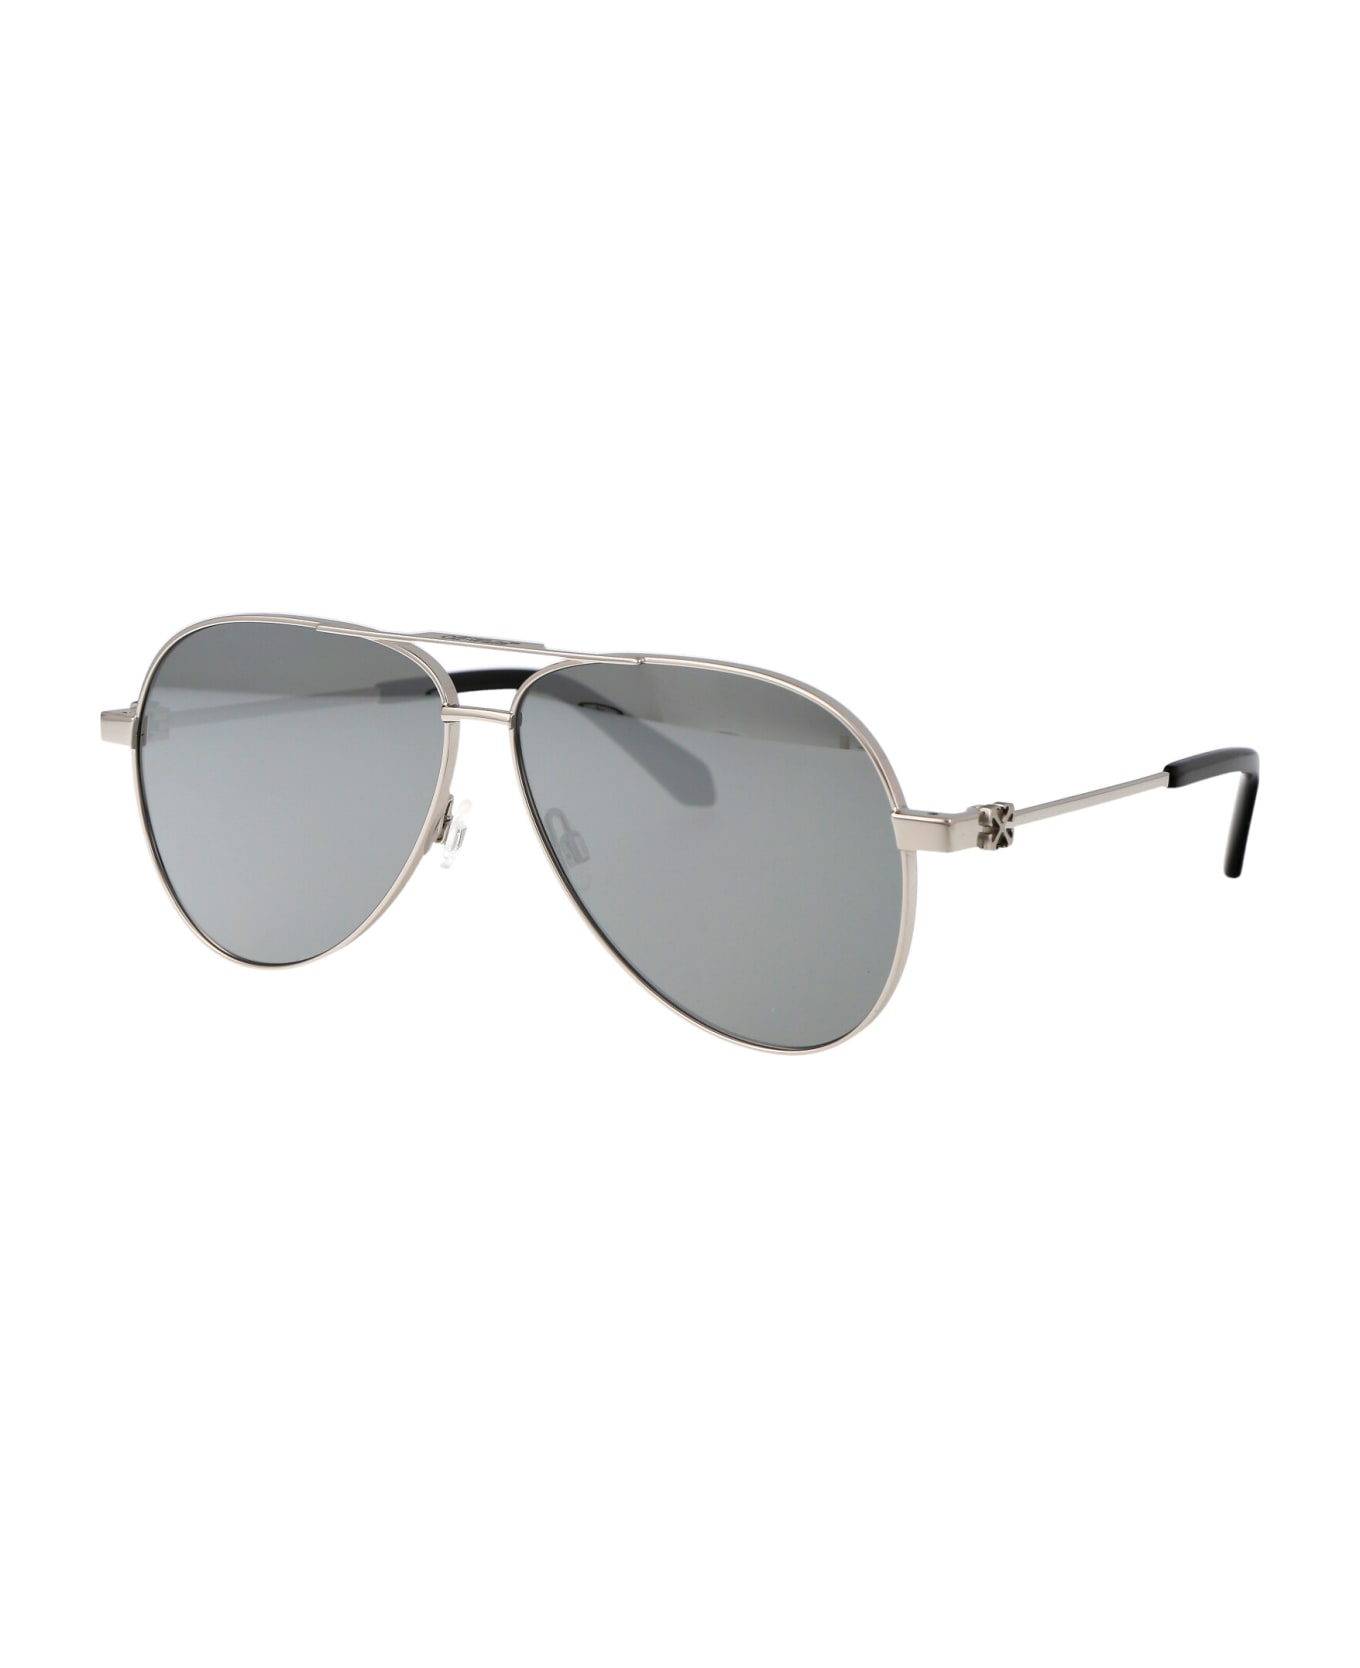 Off-White Ruston L Sunglasses - 7272 SILVER SILVER